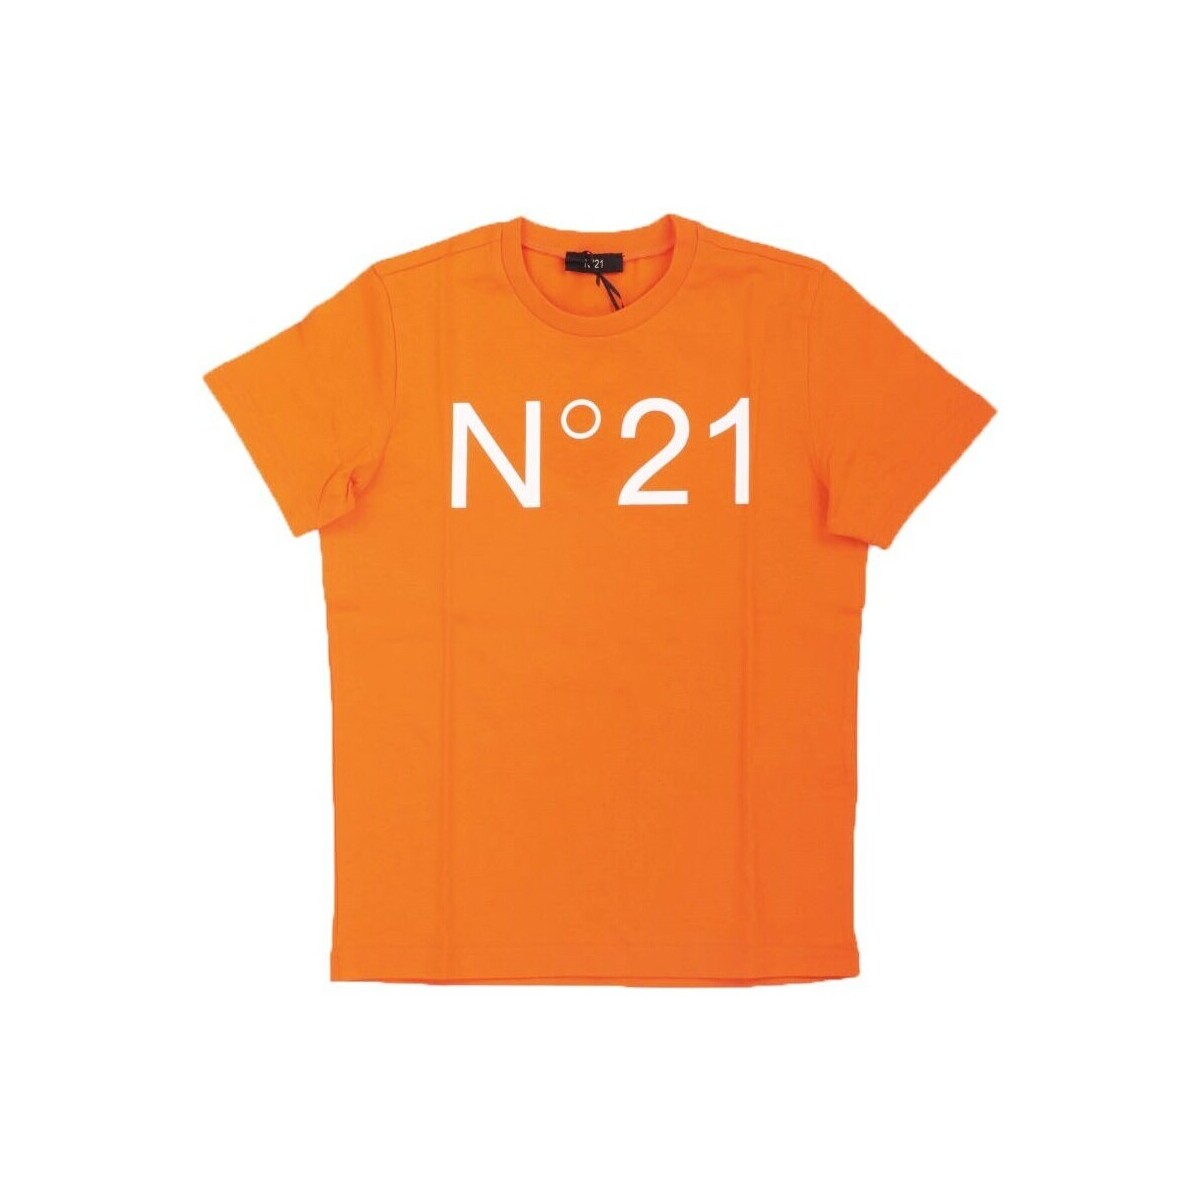 Îmbracaminte Copii Tricouri mânecă scurtă N°21 N21173 portocaliu